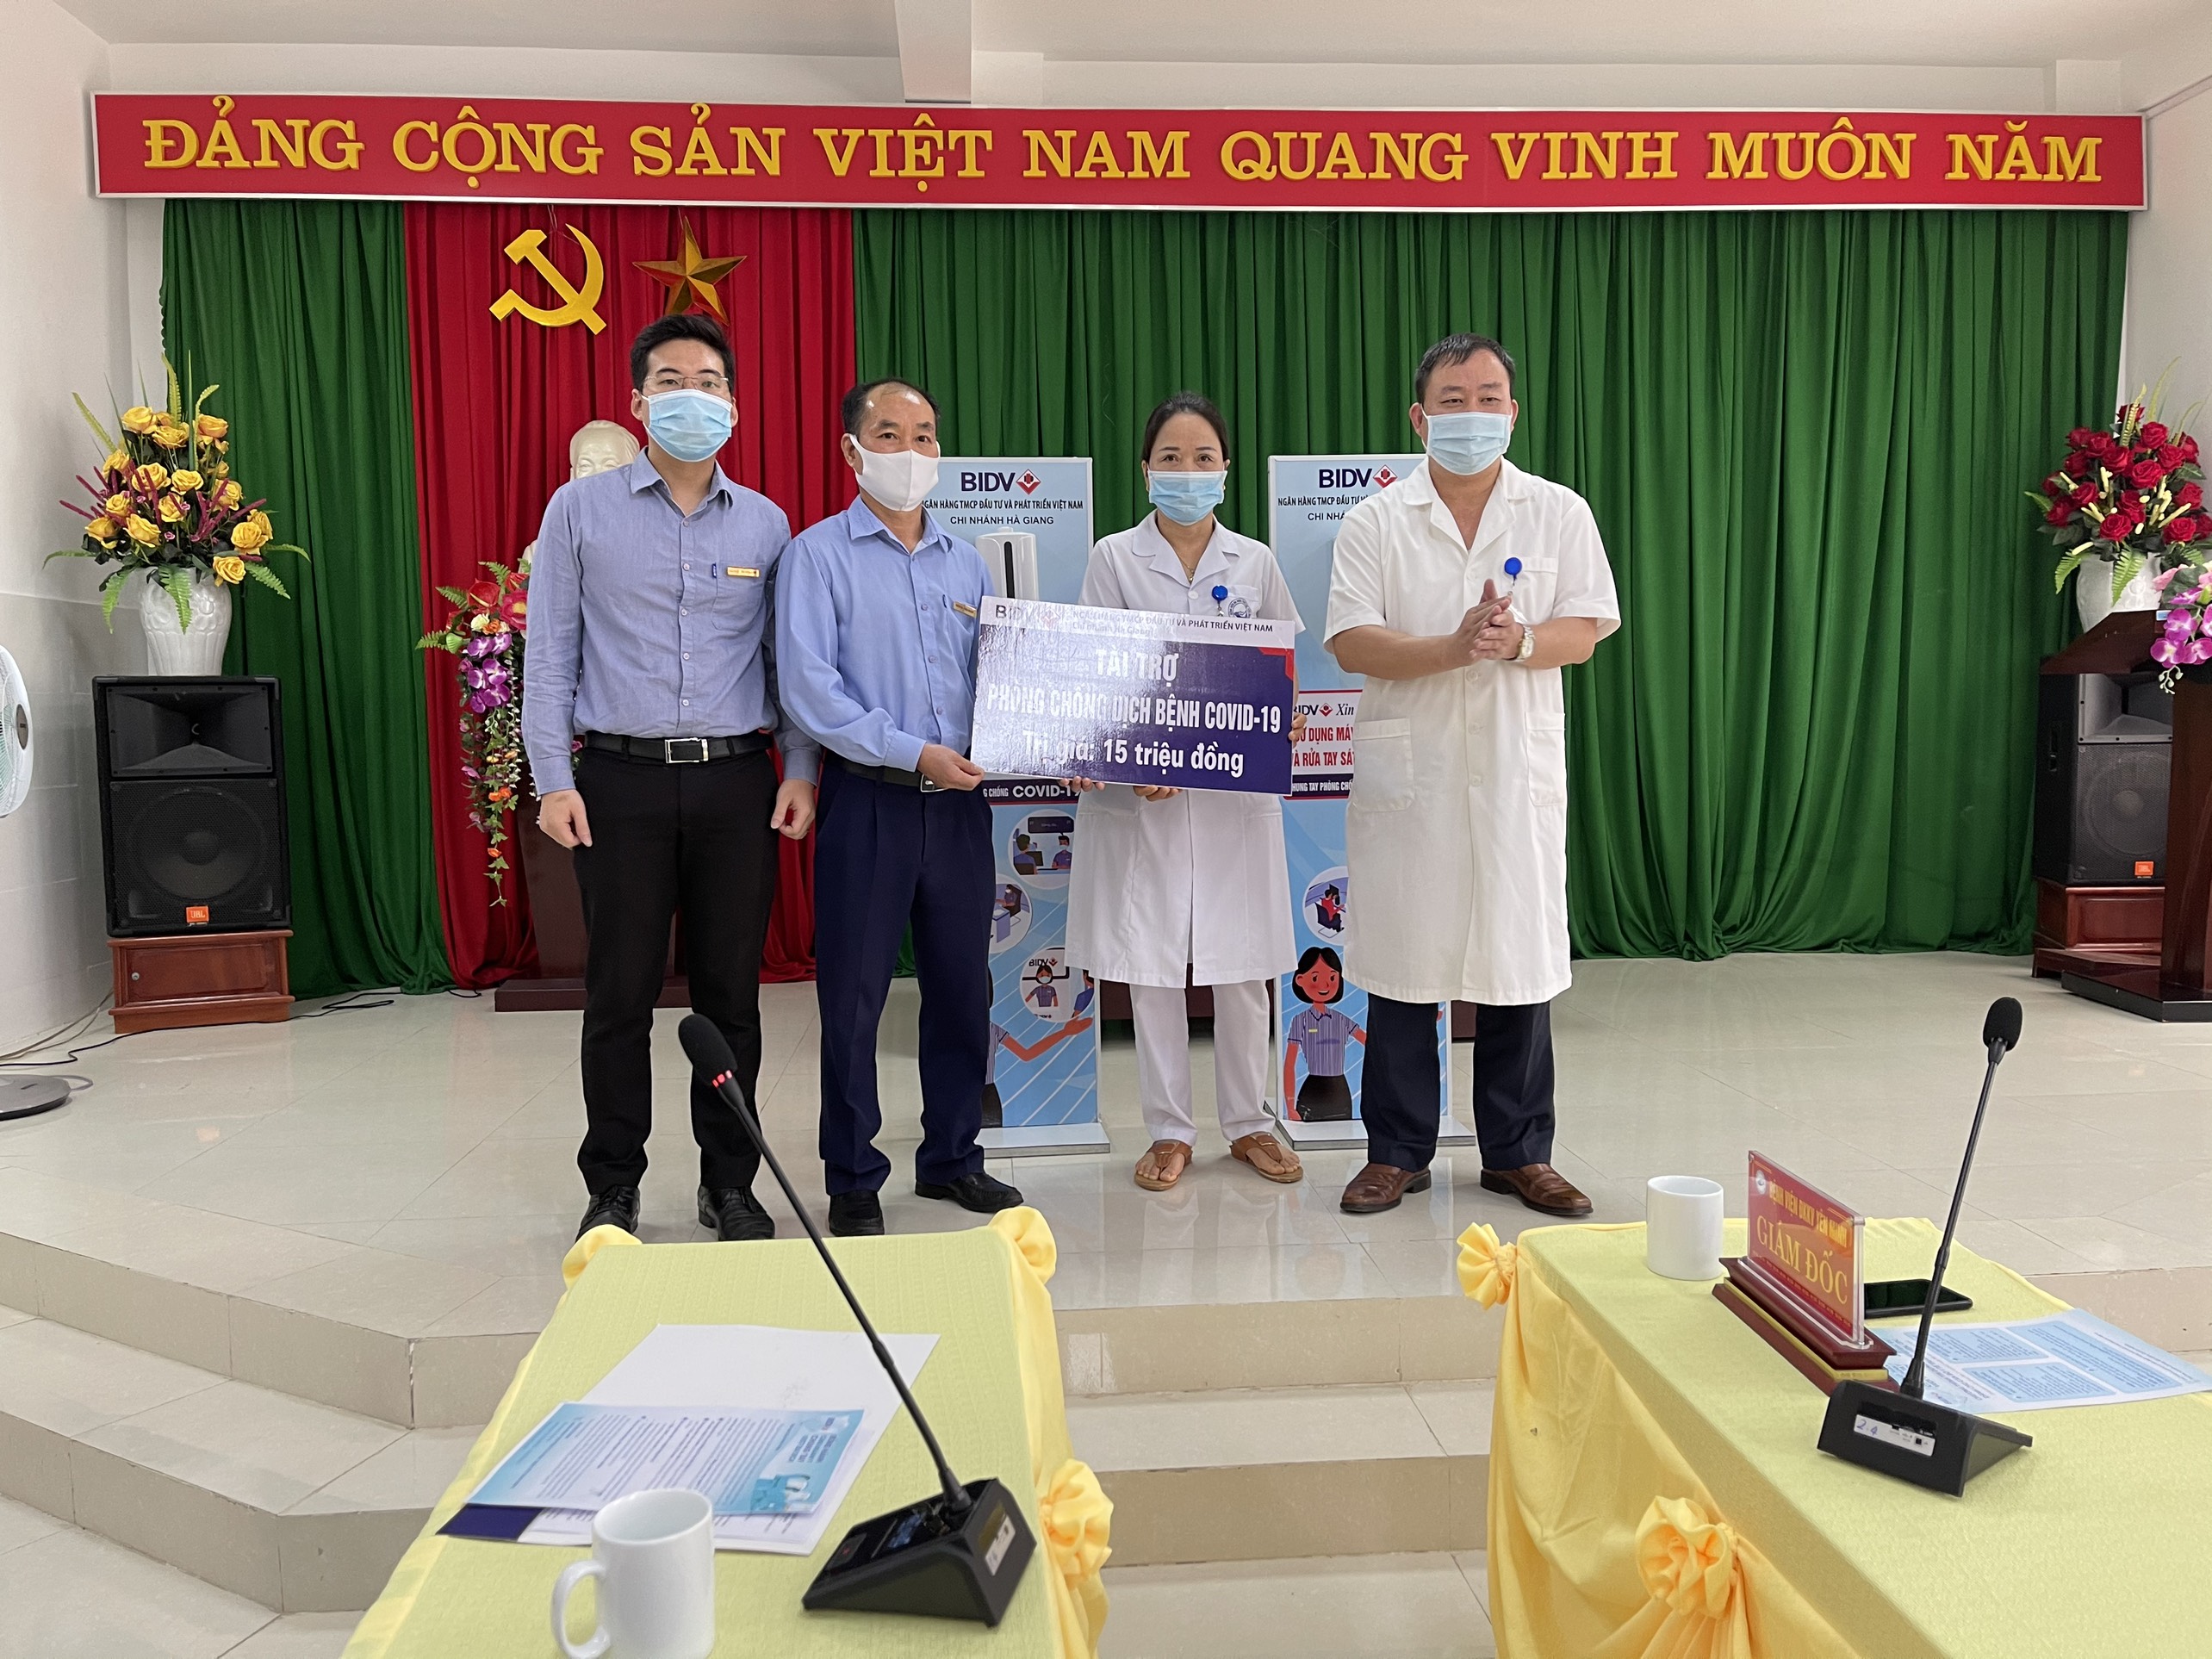 Ngân hàng CPTM Đầu tư và Phát triển Việt Nam chi nhánh Hà Giang (BIDV Hà Giang) ủng hộ BVĐKKV Yên Minh